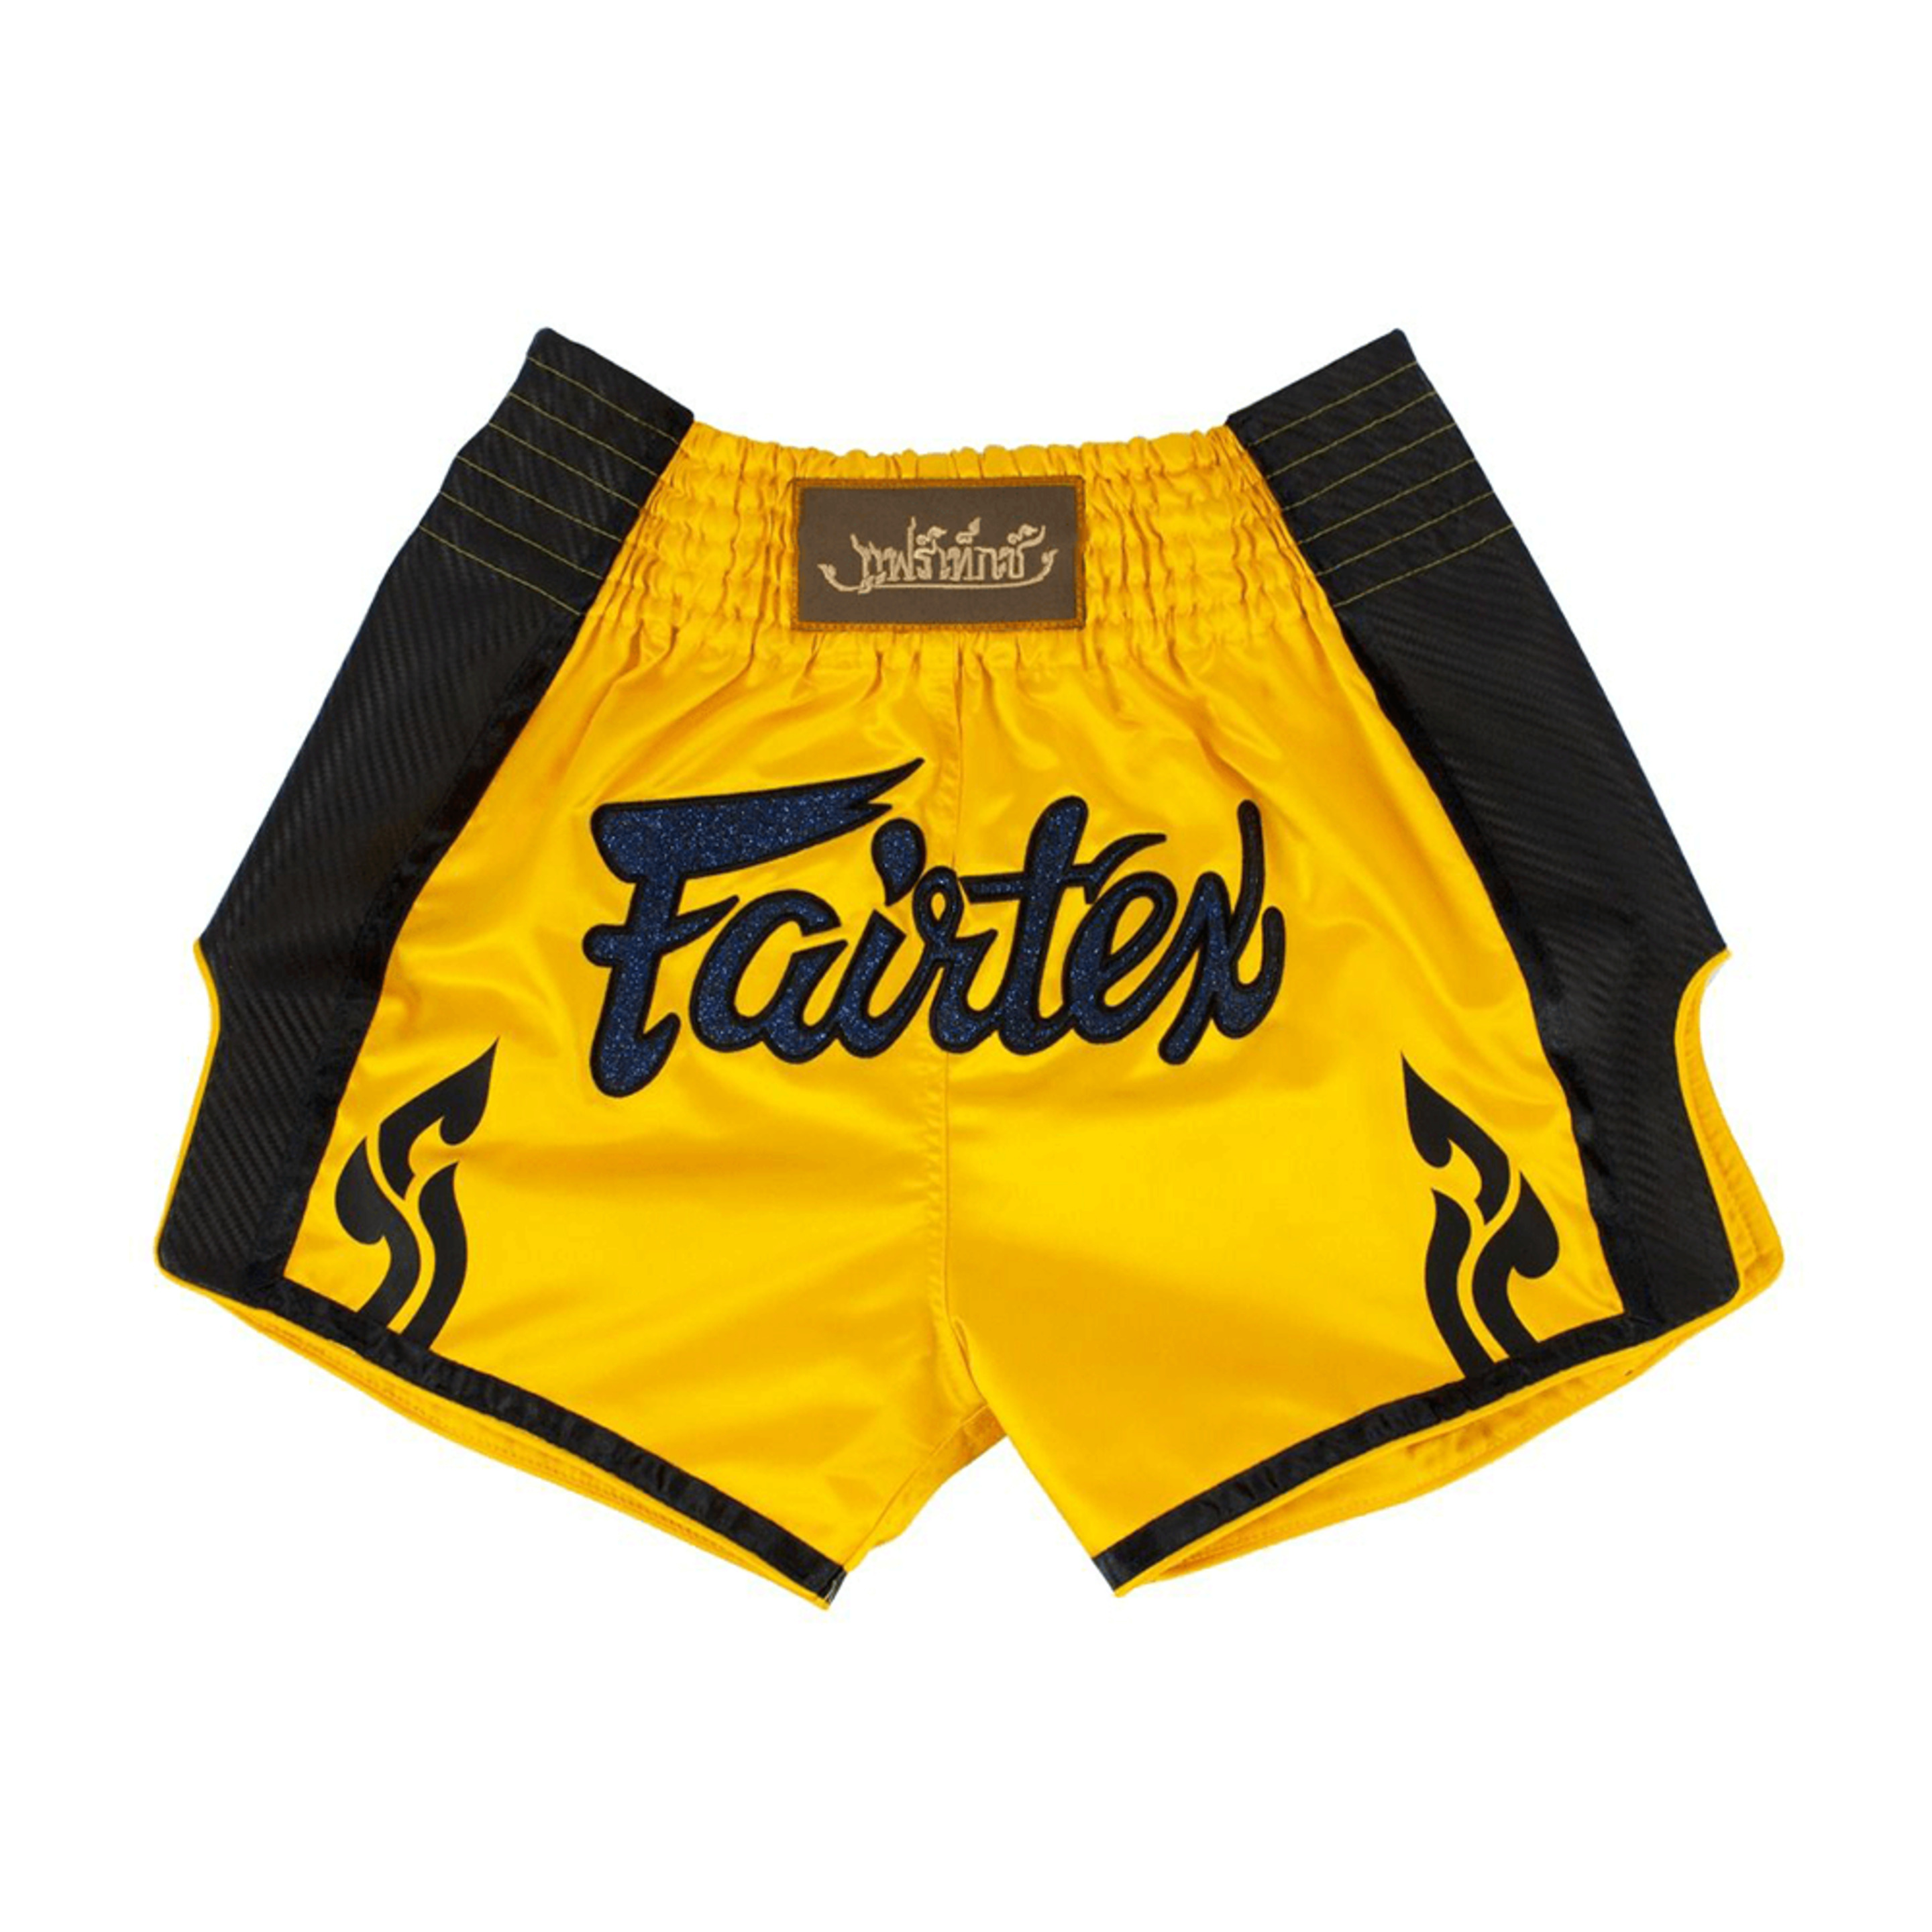 Bermudas Muay Thai Fairtex S17 - amarillo-negro - 